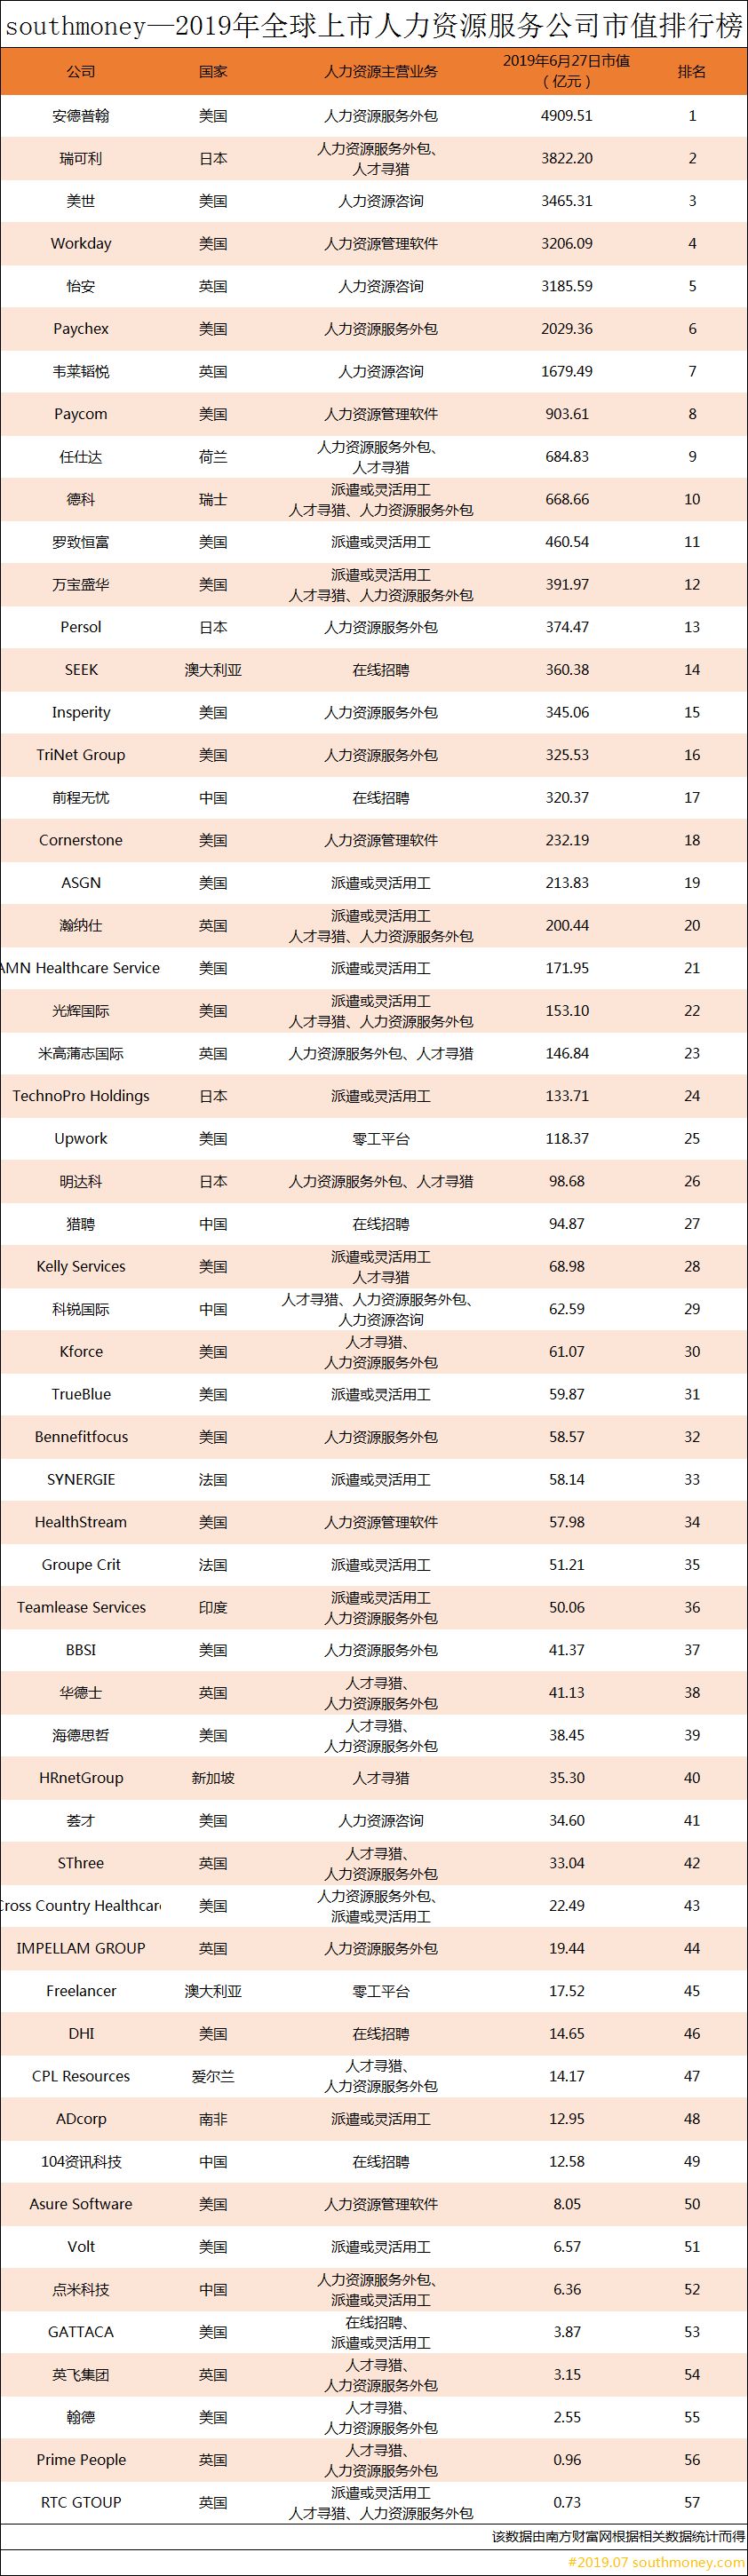 中国咨询公司排行_荣盛发展排名2018中国上市公司500强第172位